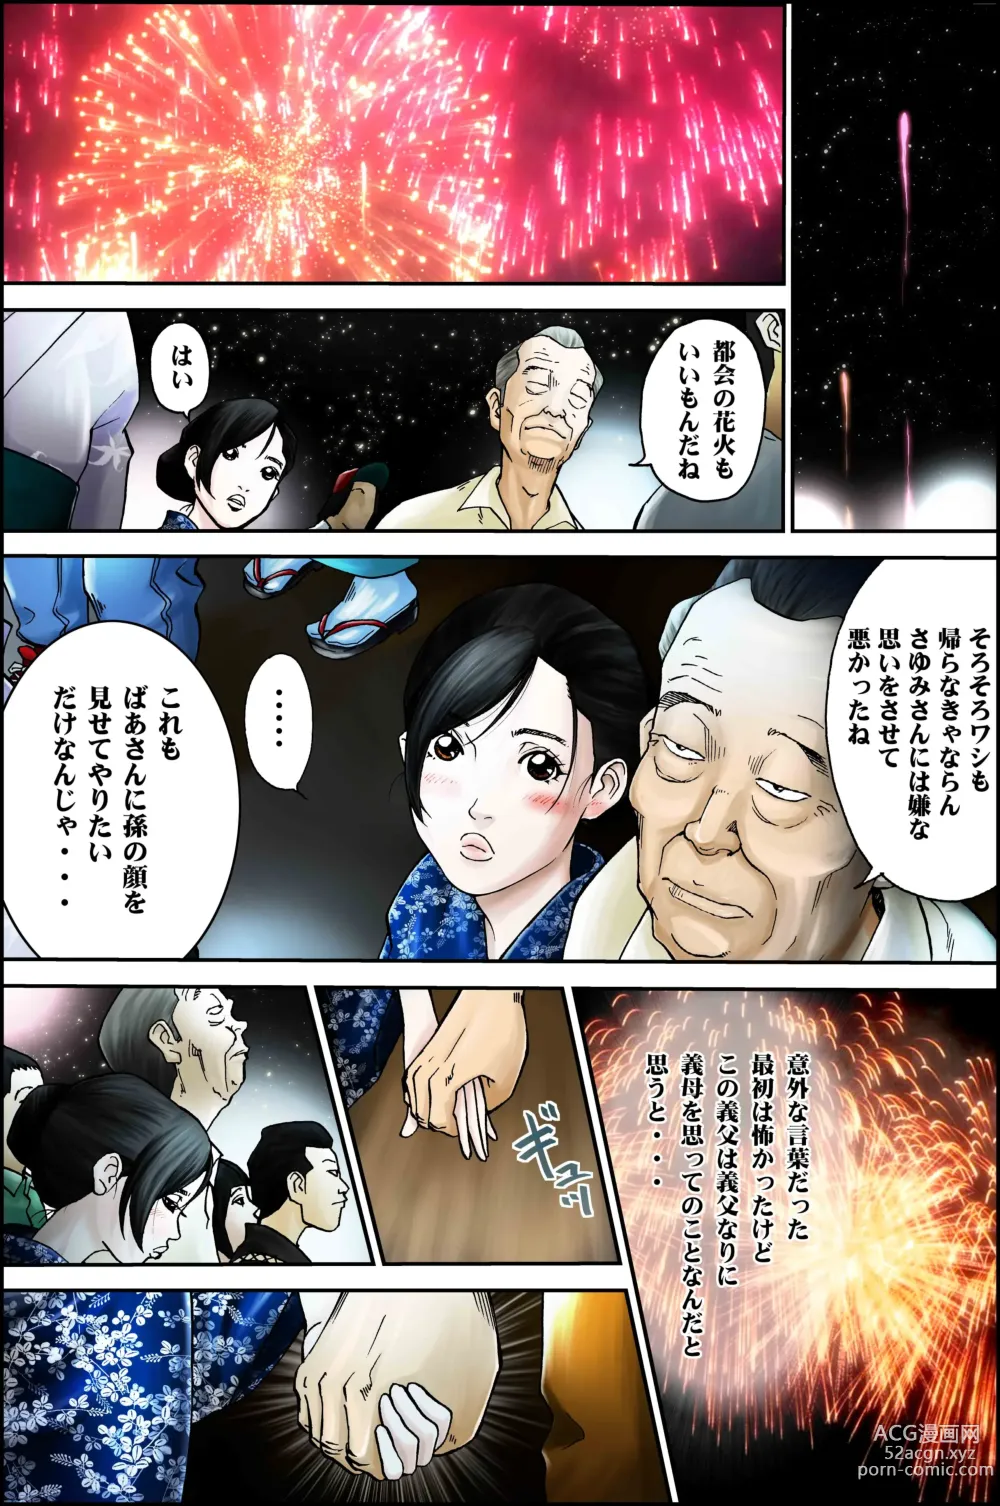 Page 28 of doujinshi D. H Danna ni Himitsu ~Ishihara Sayumi 32-sai no Baai~ Natsu no Yukata no Omowaku